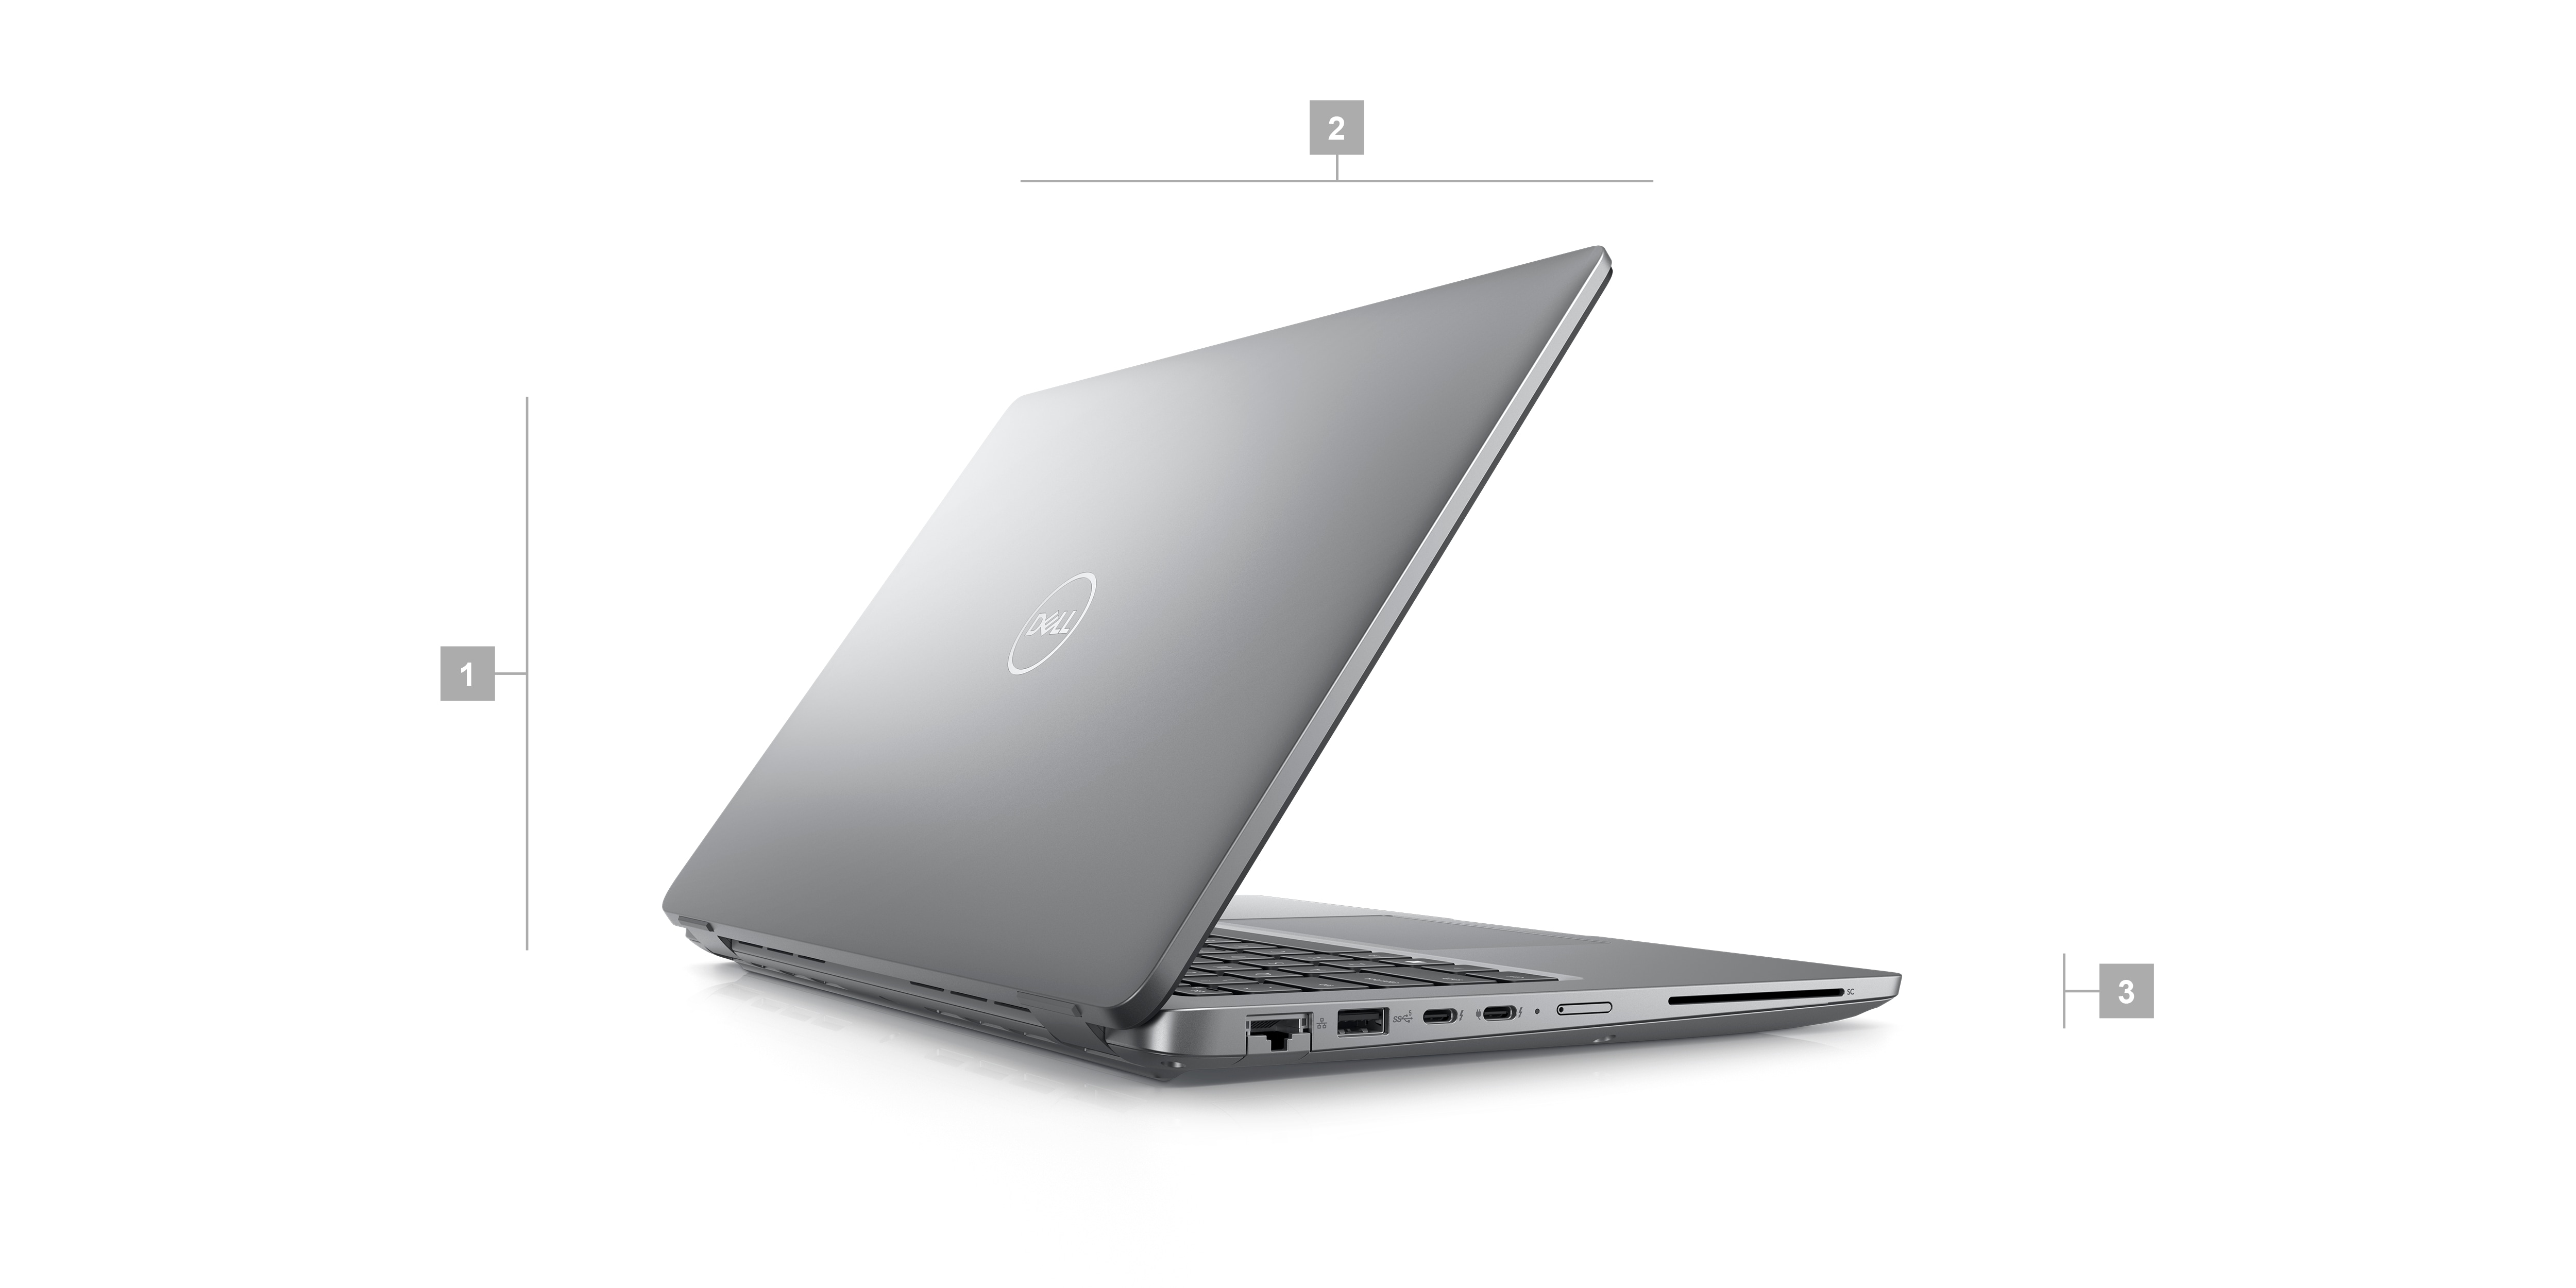 제품 크기 및 중량을 나타내는 1~3의 숫자가 표시된 Dell 노트북.